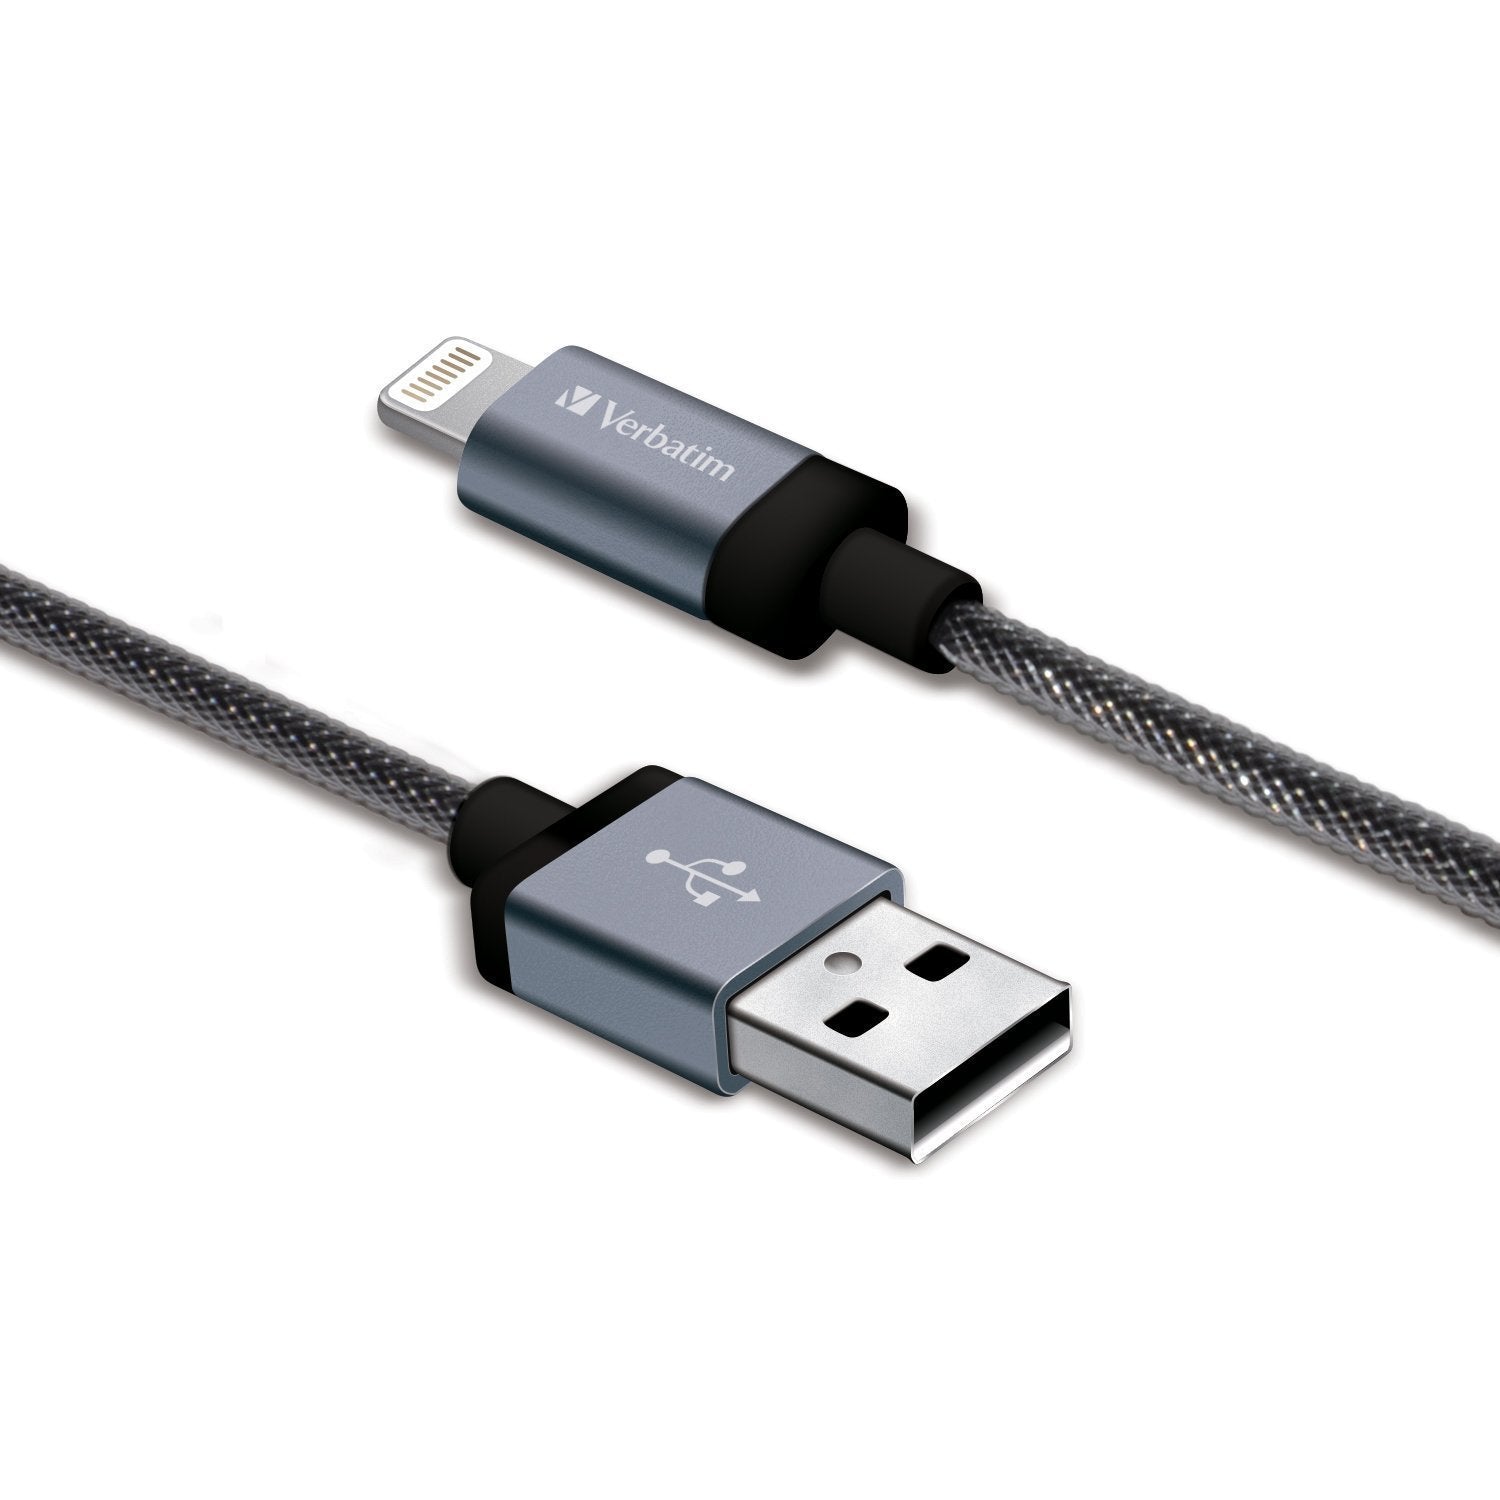 Cable-USB-Verbatim-99211